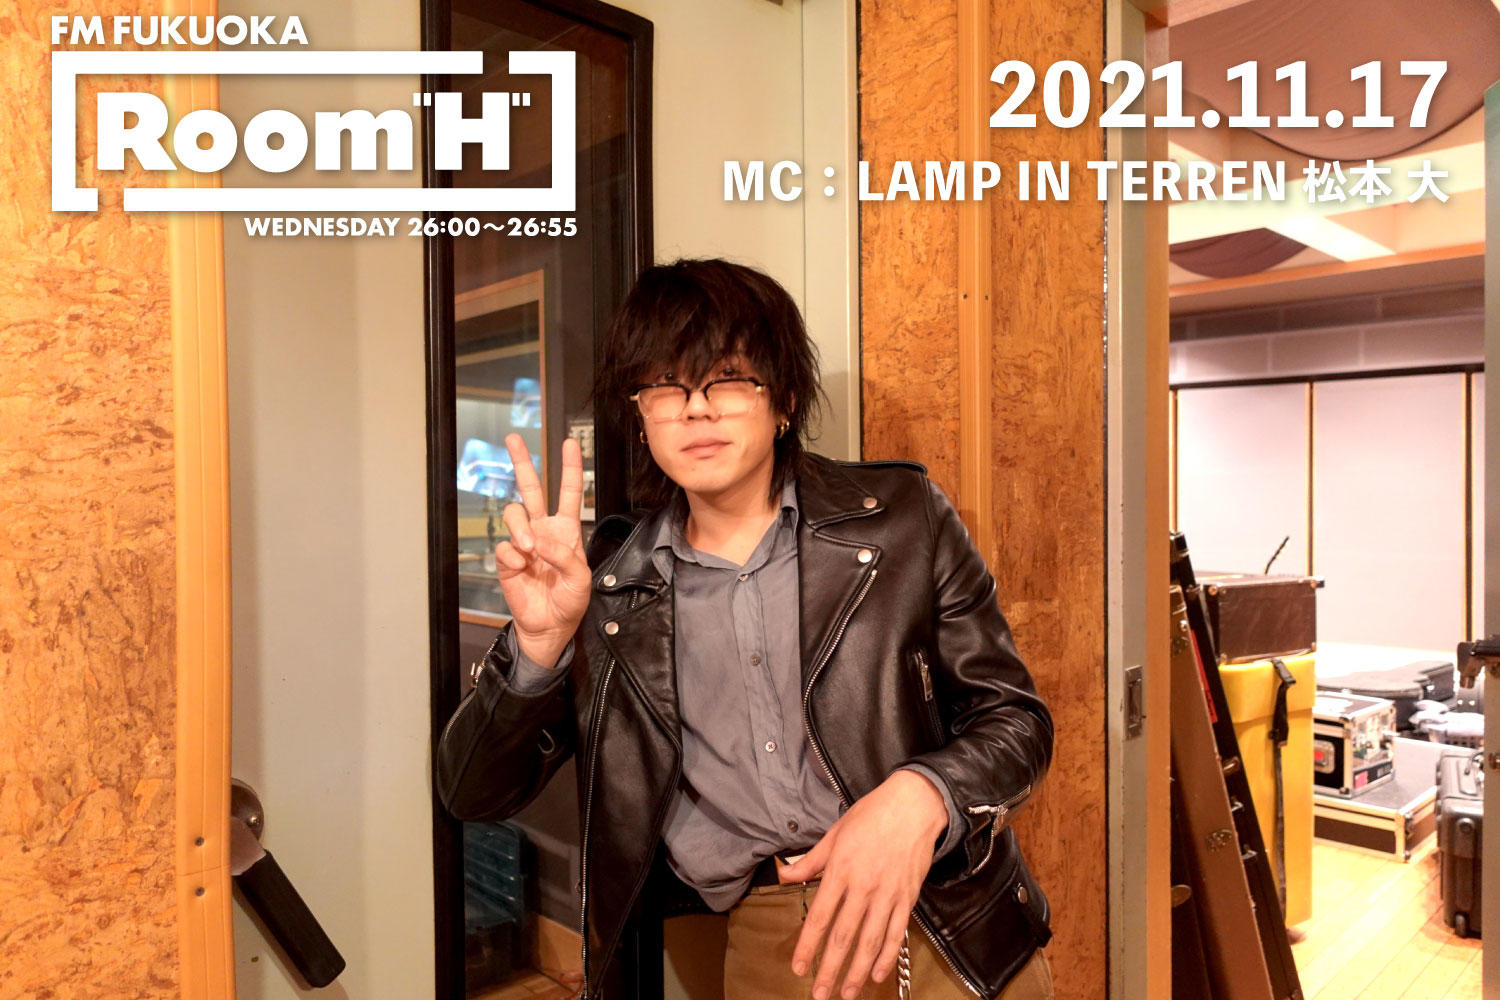 【読むラジオ】MC：松本大(LAMP IN TERREN) 最近ハマっているおすすめの芸人を紹介！「Room H」 -2021.11.17-